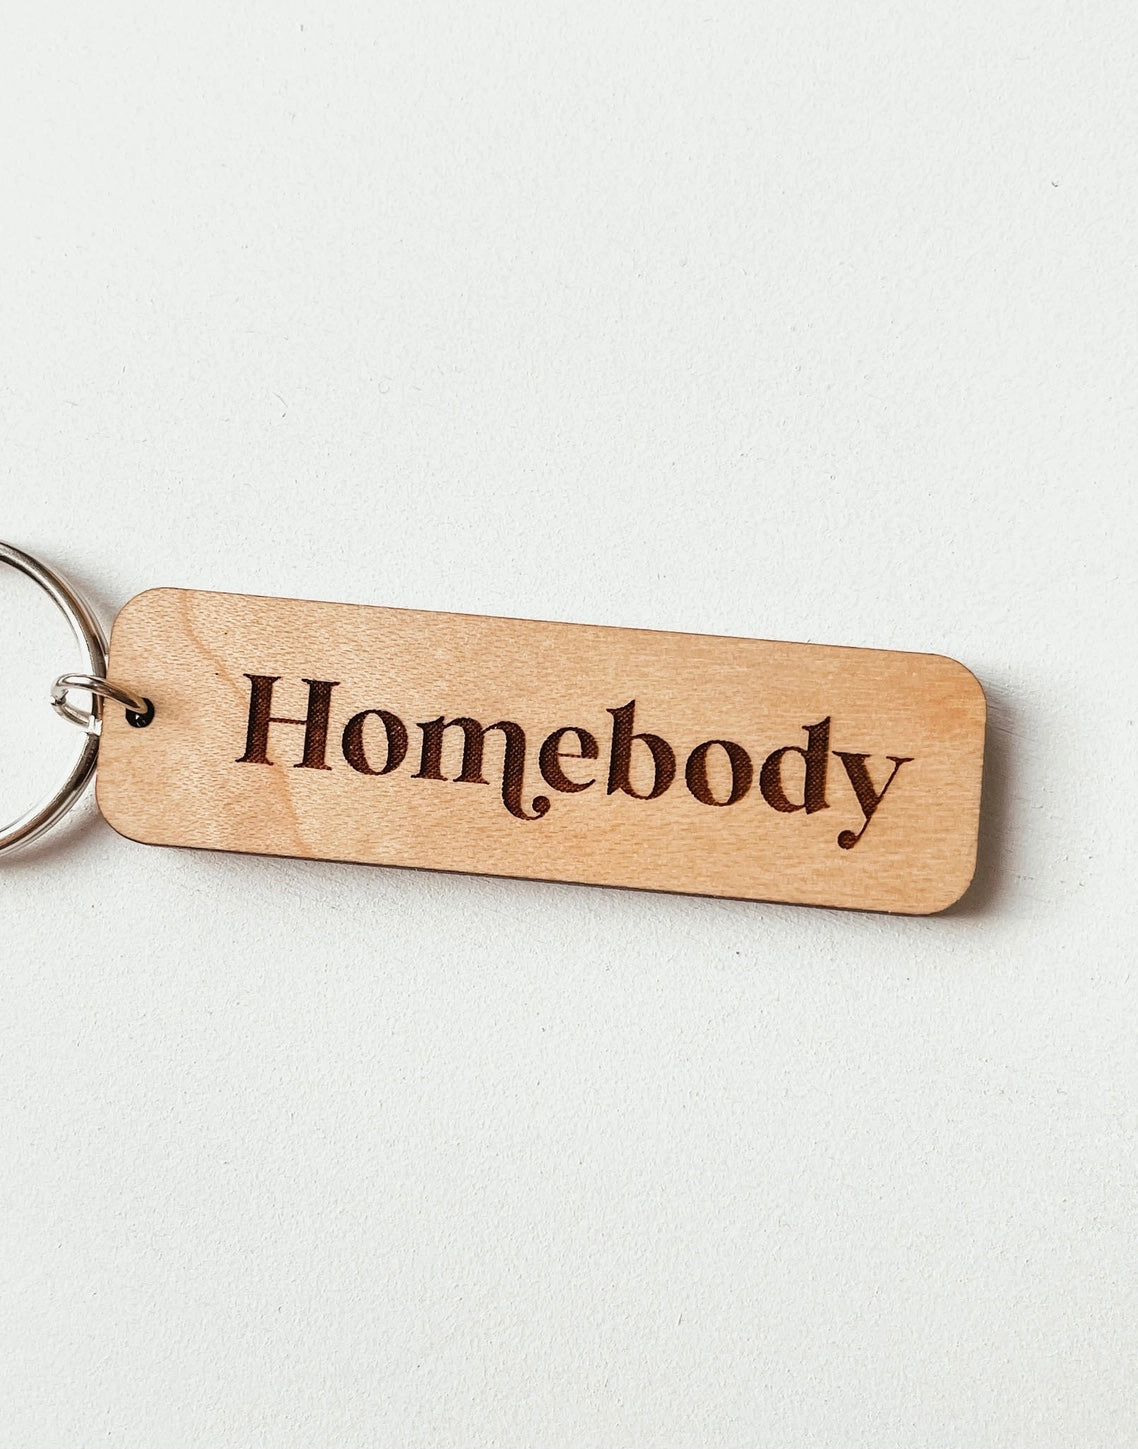 Homebody Keychain